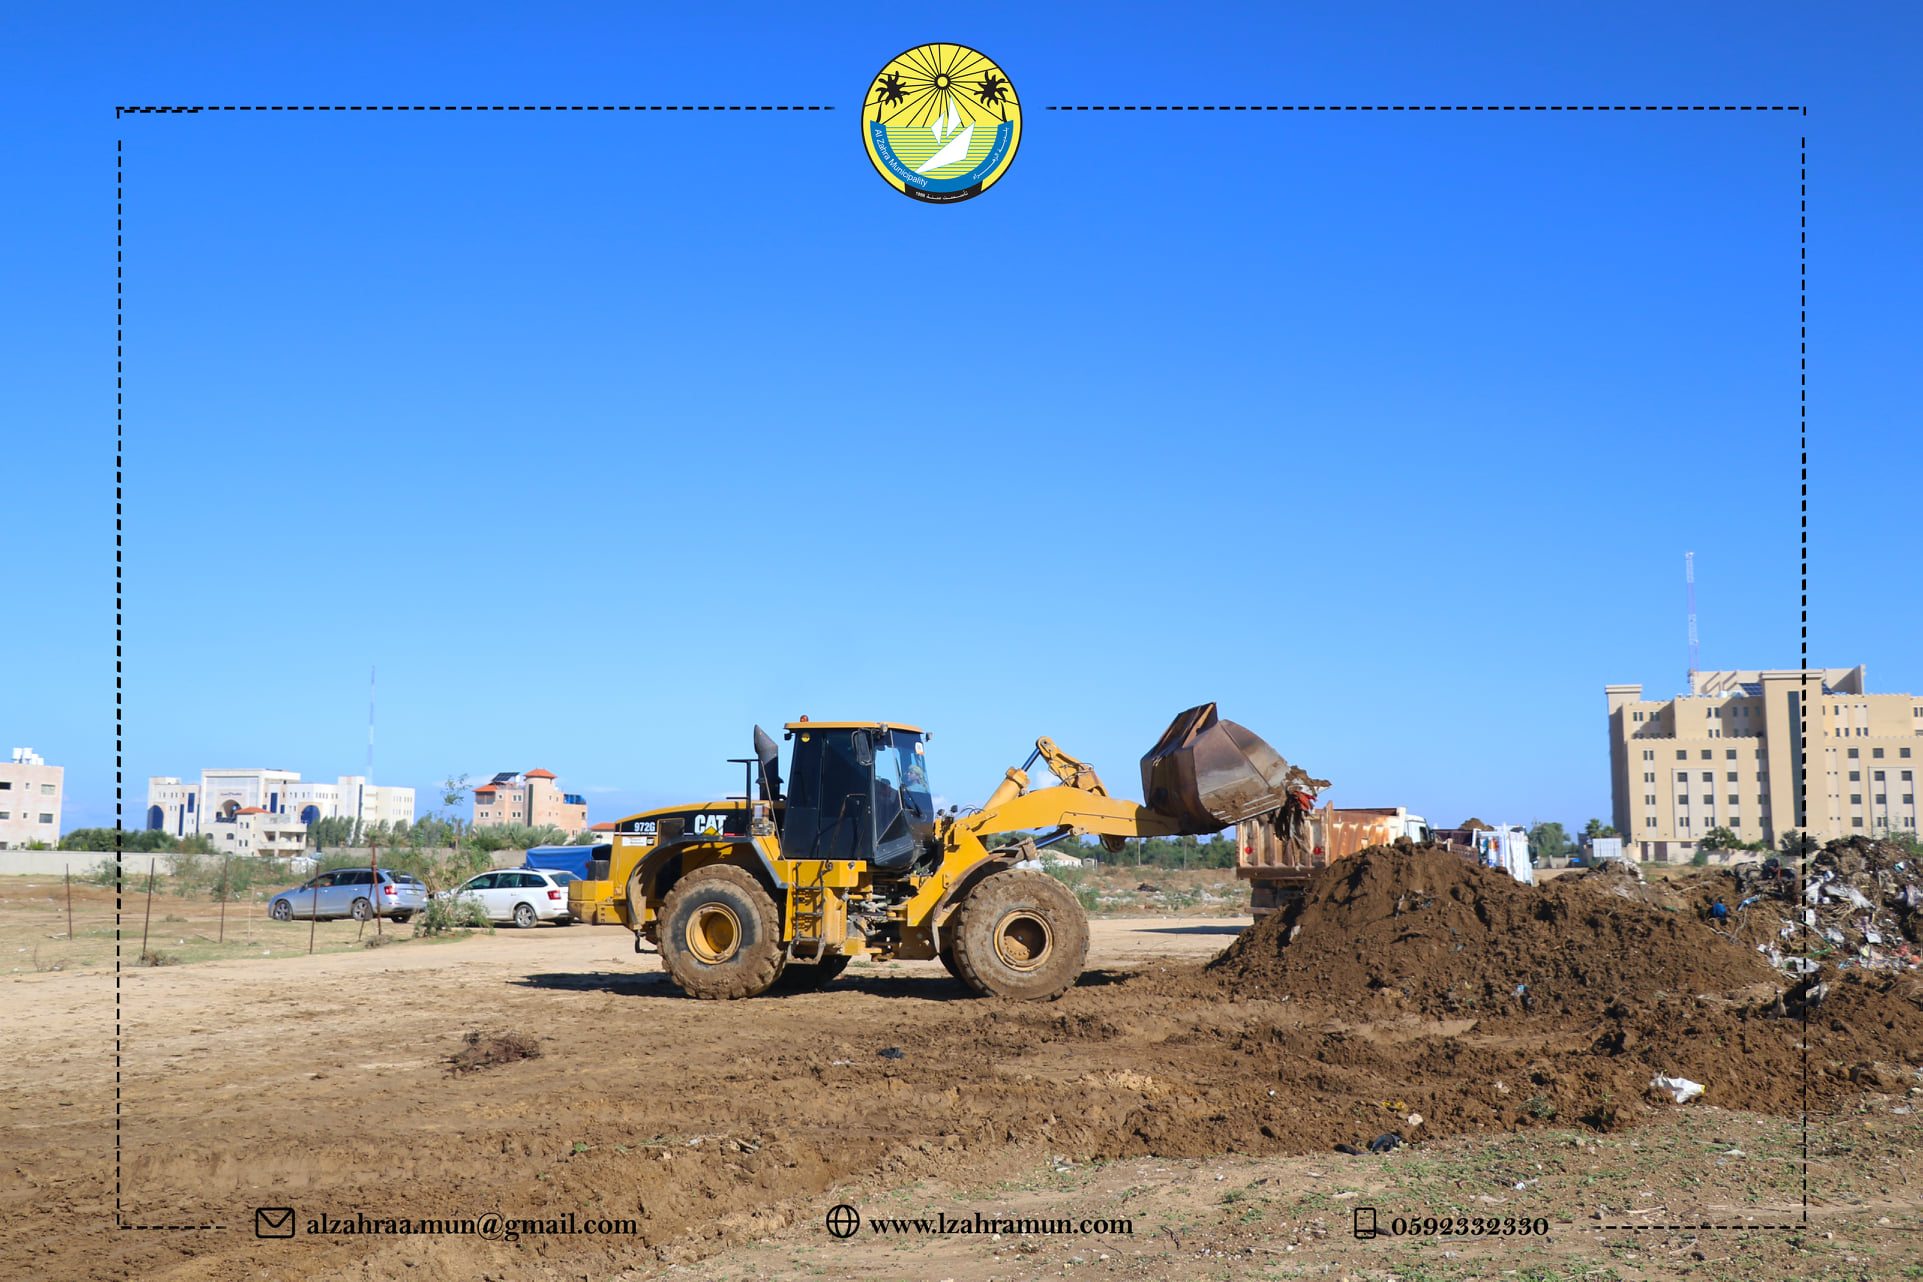 بدء أعمال تسوية وتنظيف موقع بناء المدينة المصرية شمال مدينة الزهراء.